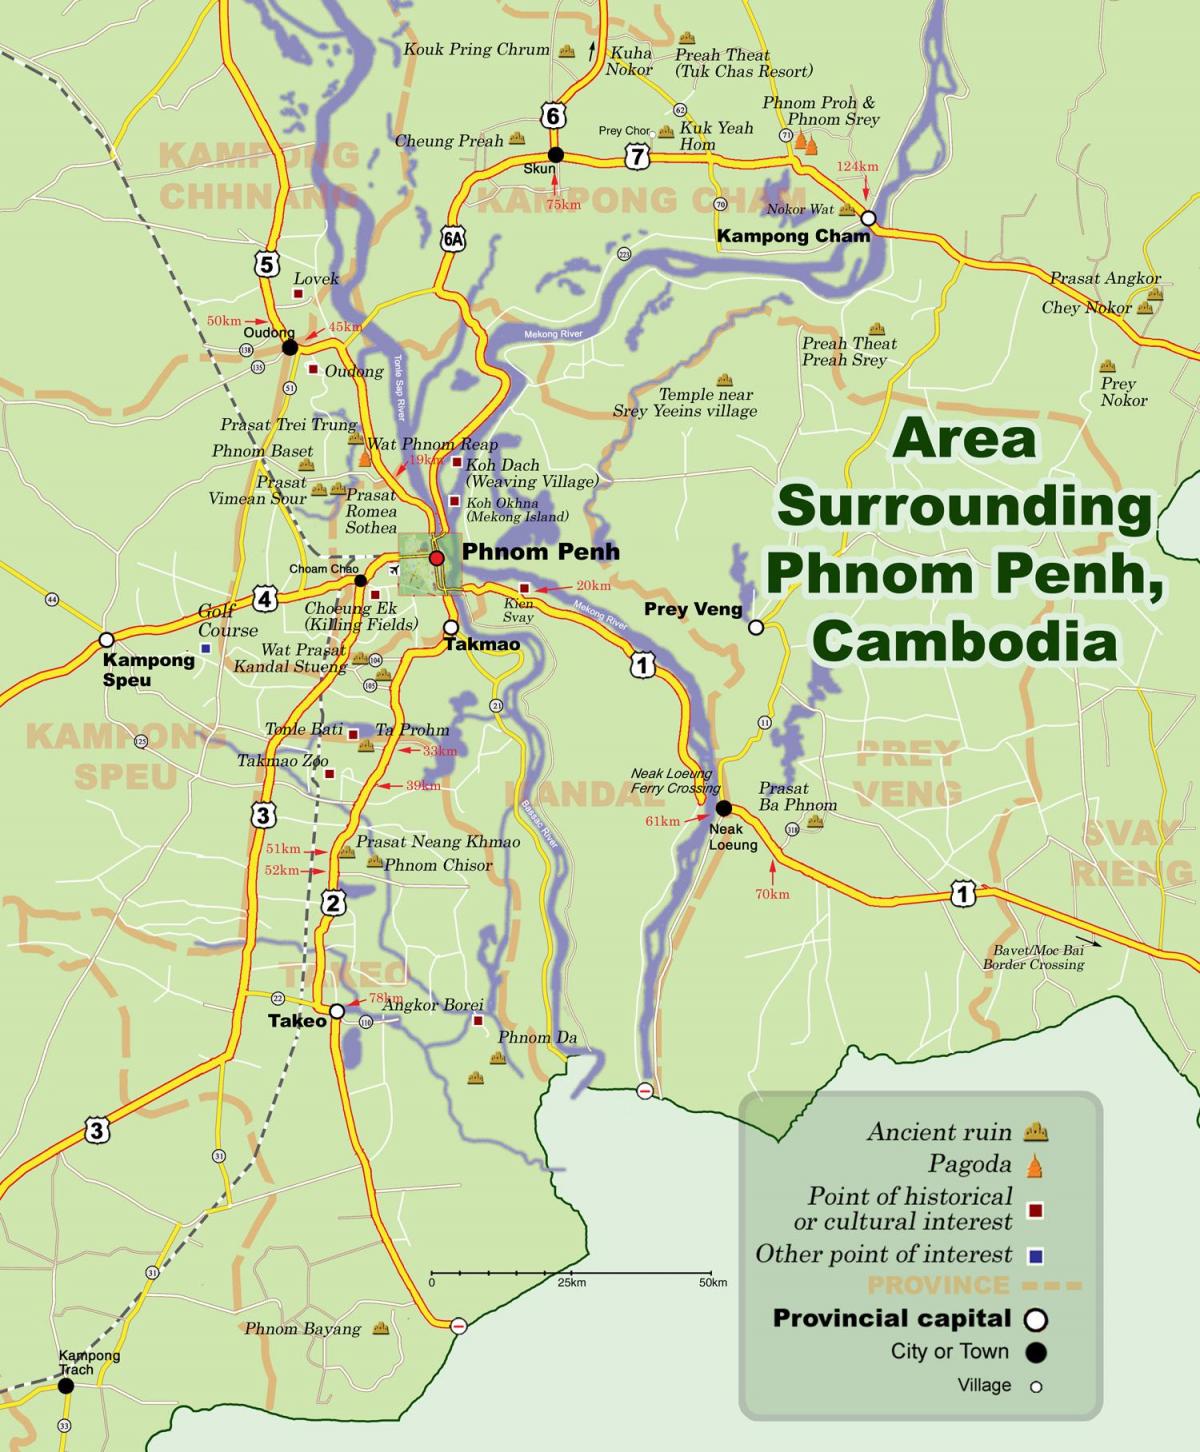 Kart av phnom penh i Kambodsja